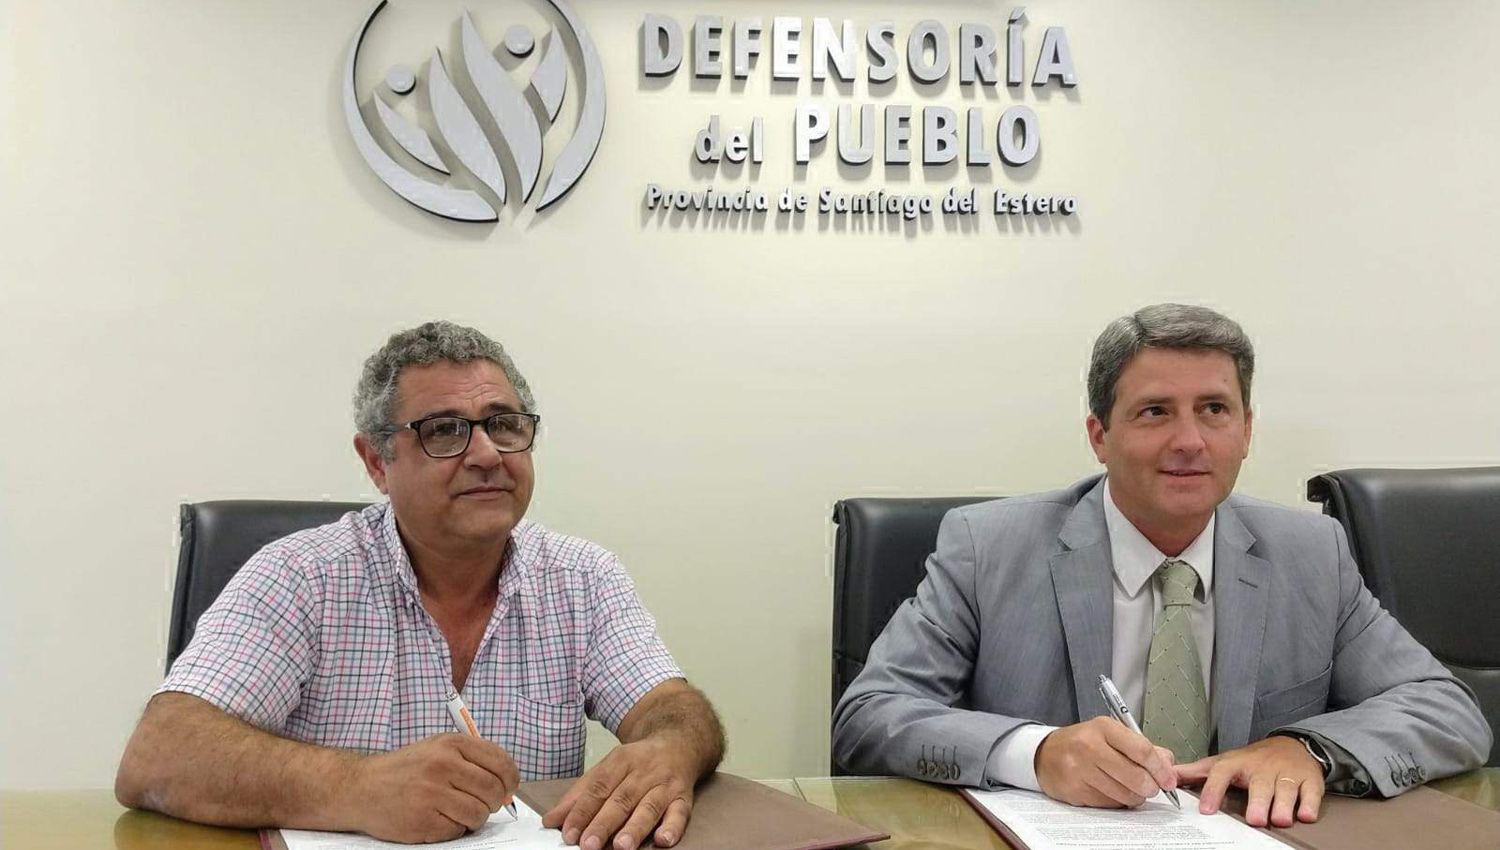 De la firma participaron el jefe comunal José Vittar y el defensor del Pueblo Dr Lionel Su�rez